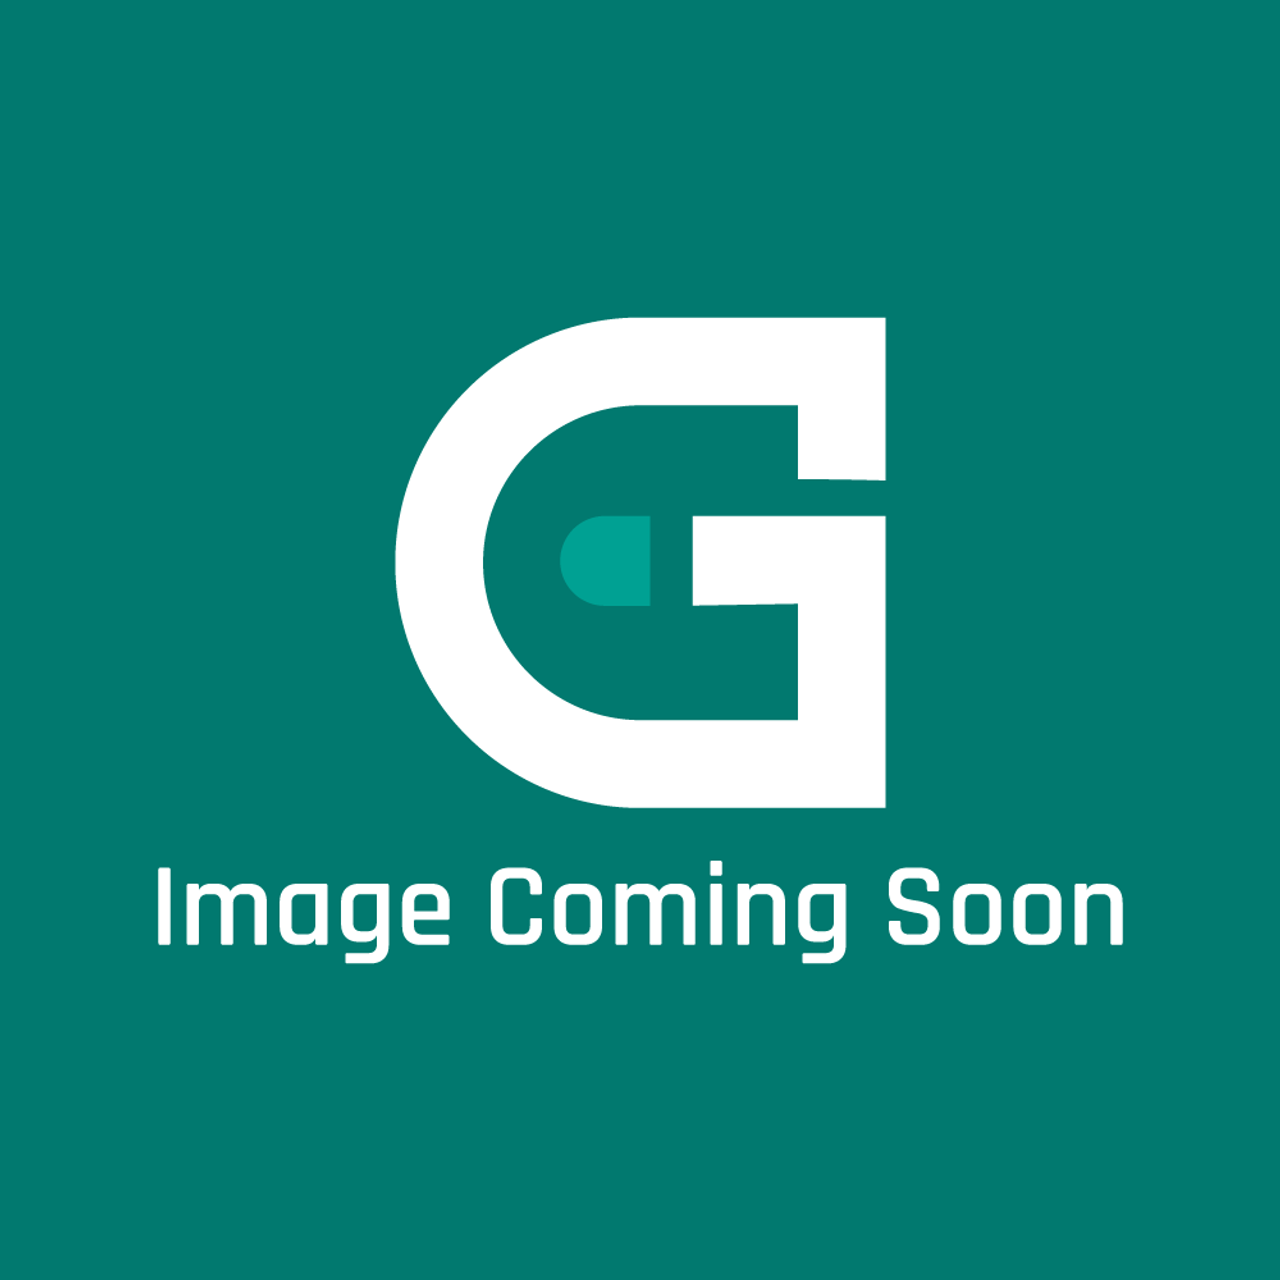 GE Appliances WB26X31059 - FAN BLOWER - Image Coming Soon!